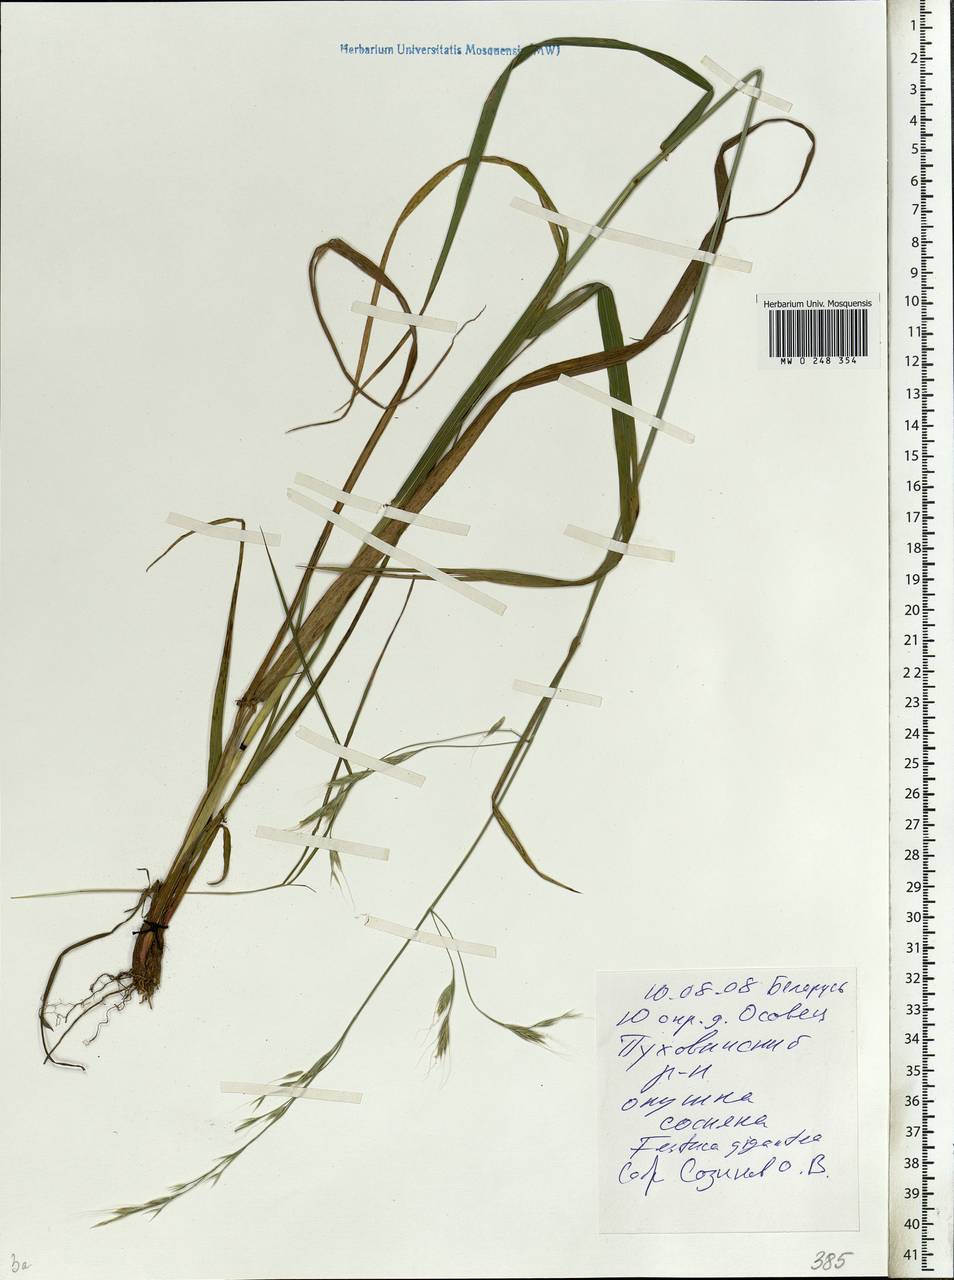 Lolium giganteum (L.) Darbysh., Восточная Европа, Белоруссия (E3a) (Белоруссия)